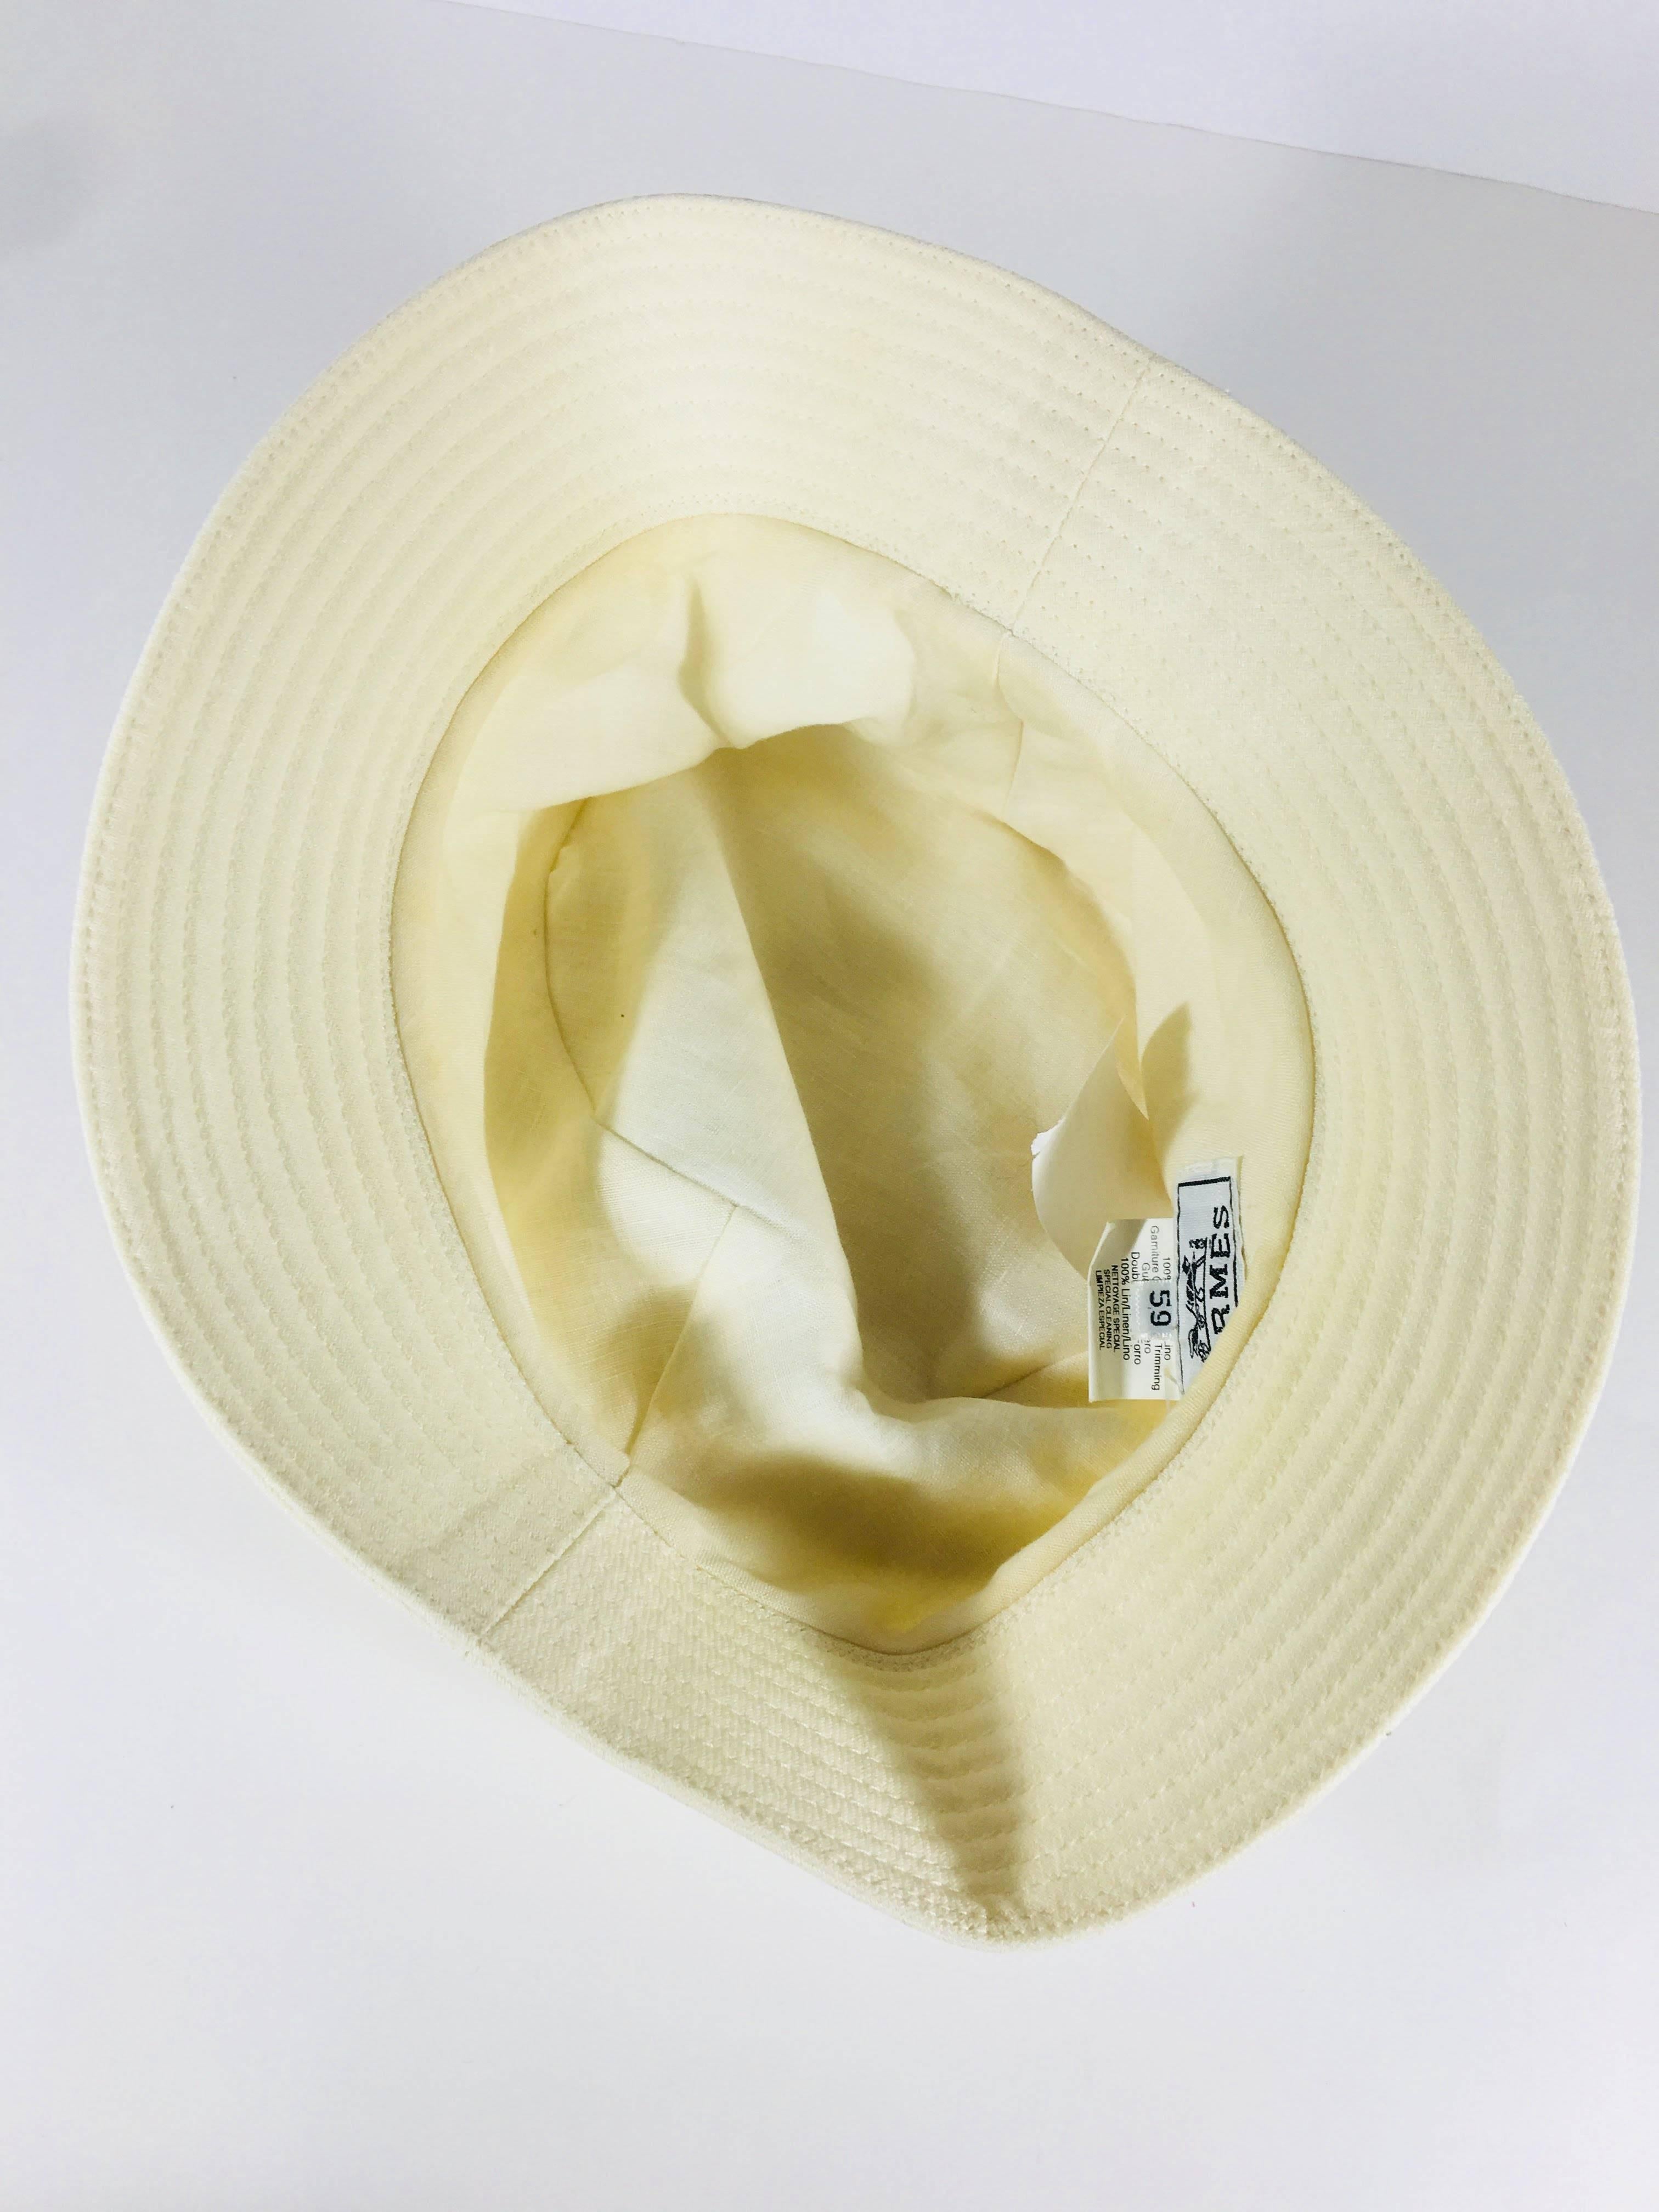 hermès bucket hat